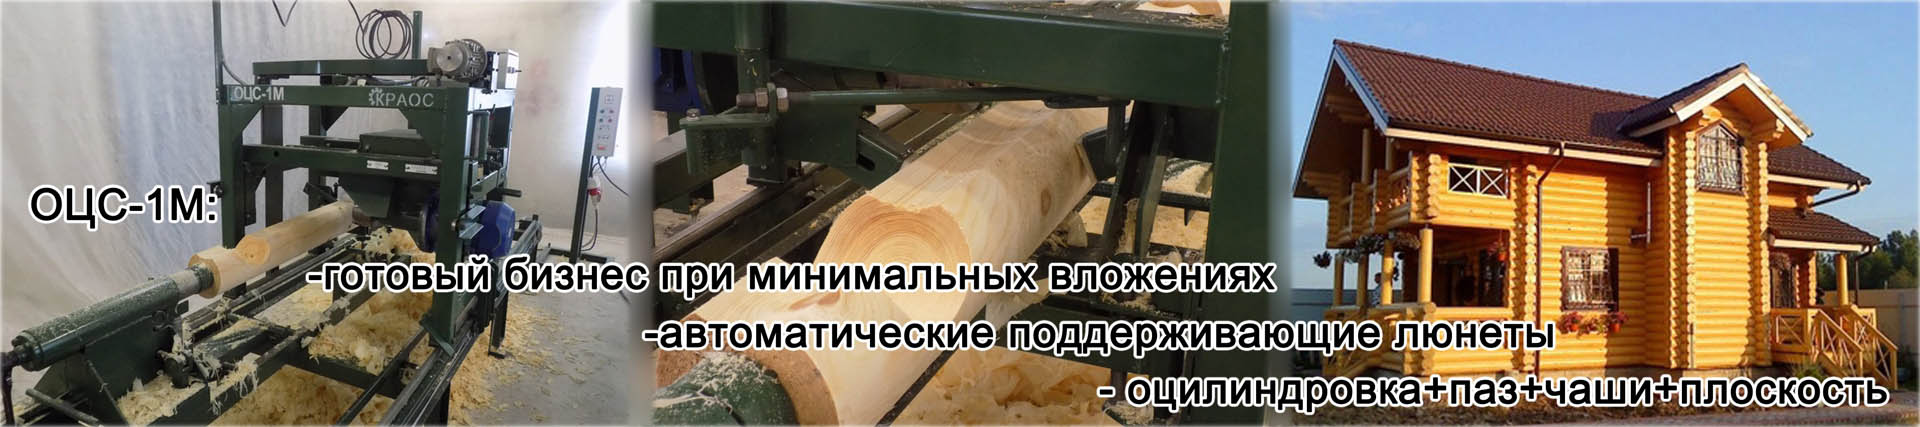 Производство и продажа деревообрабатывающего оборудования